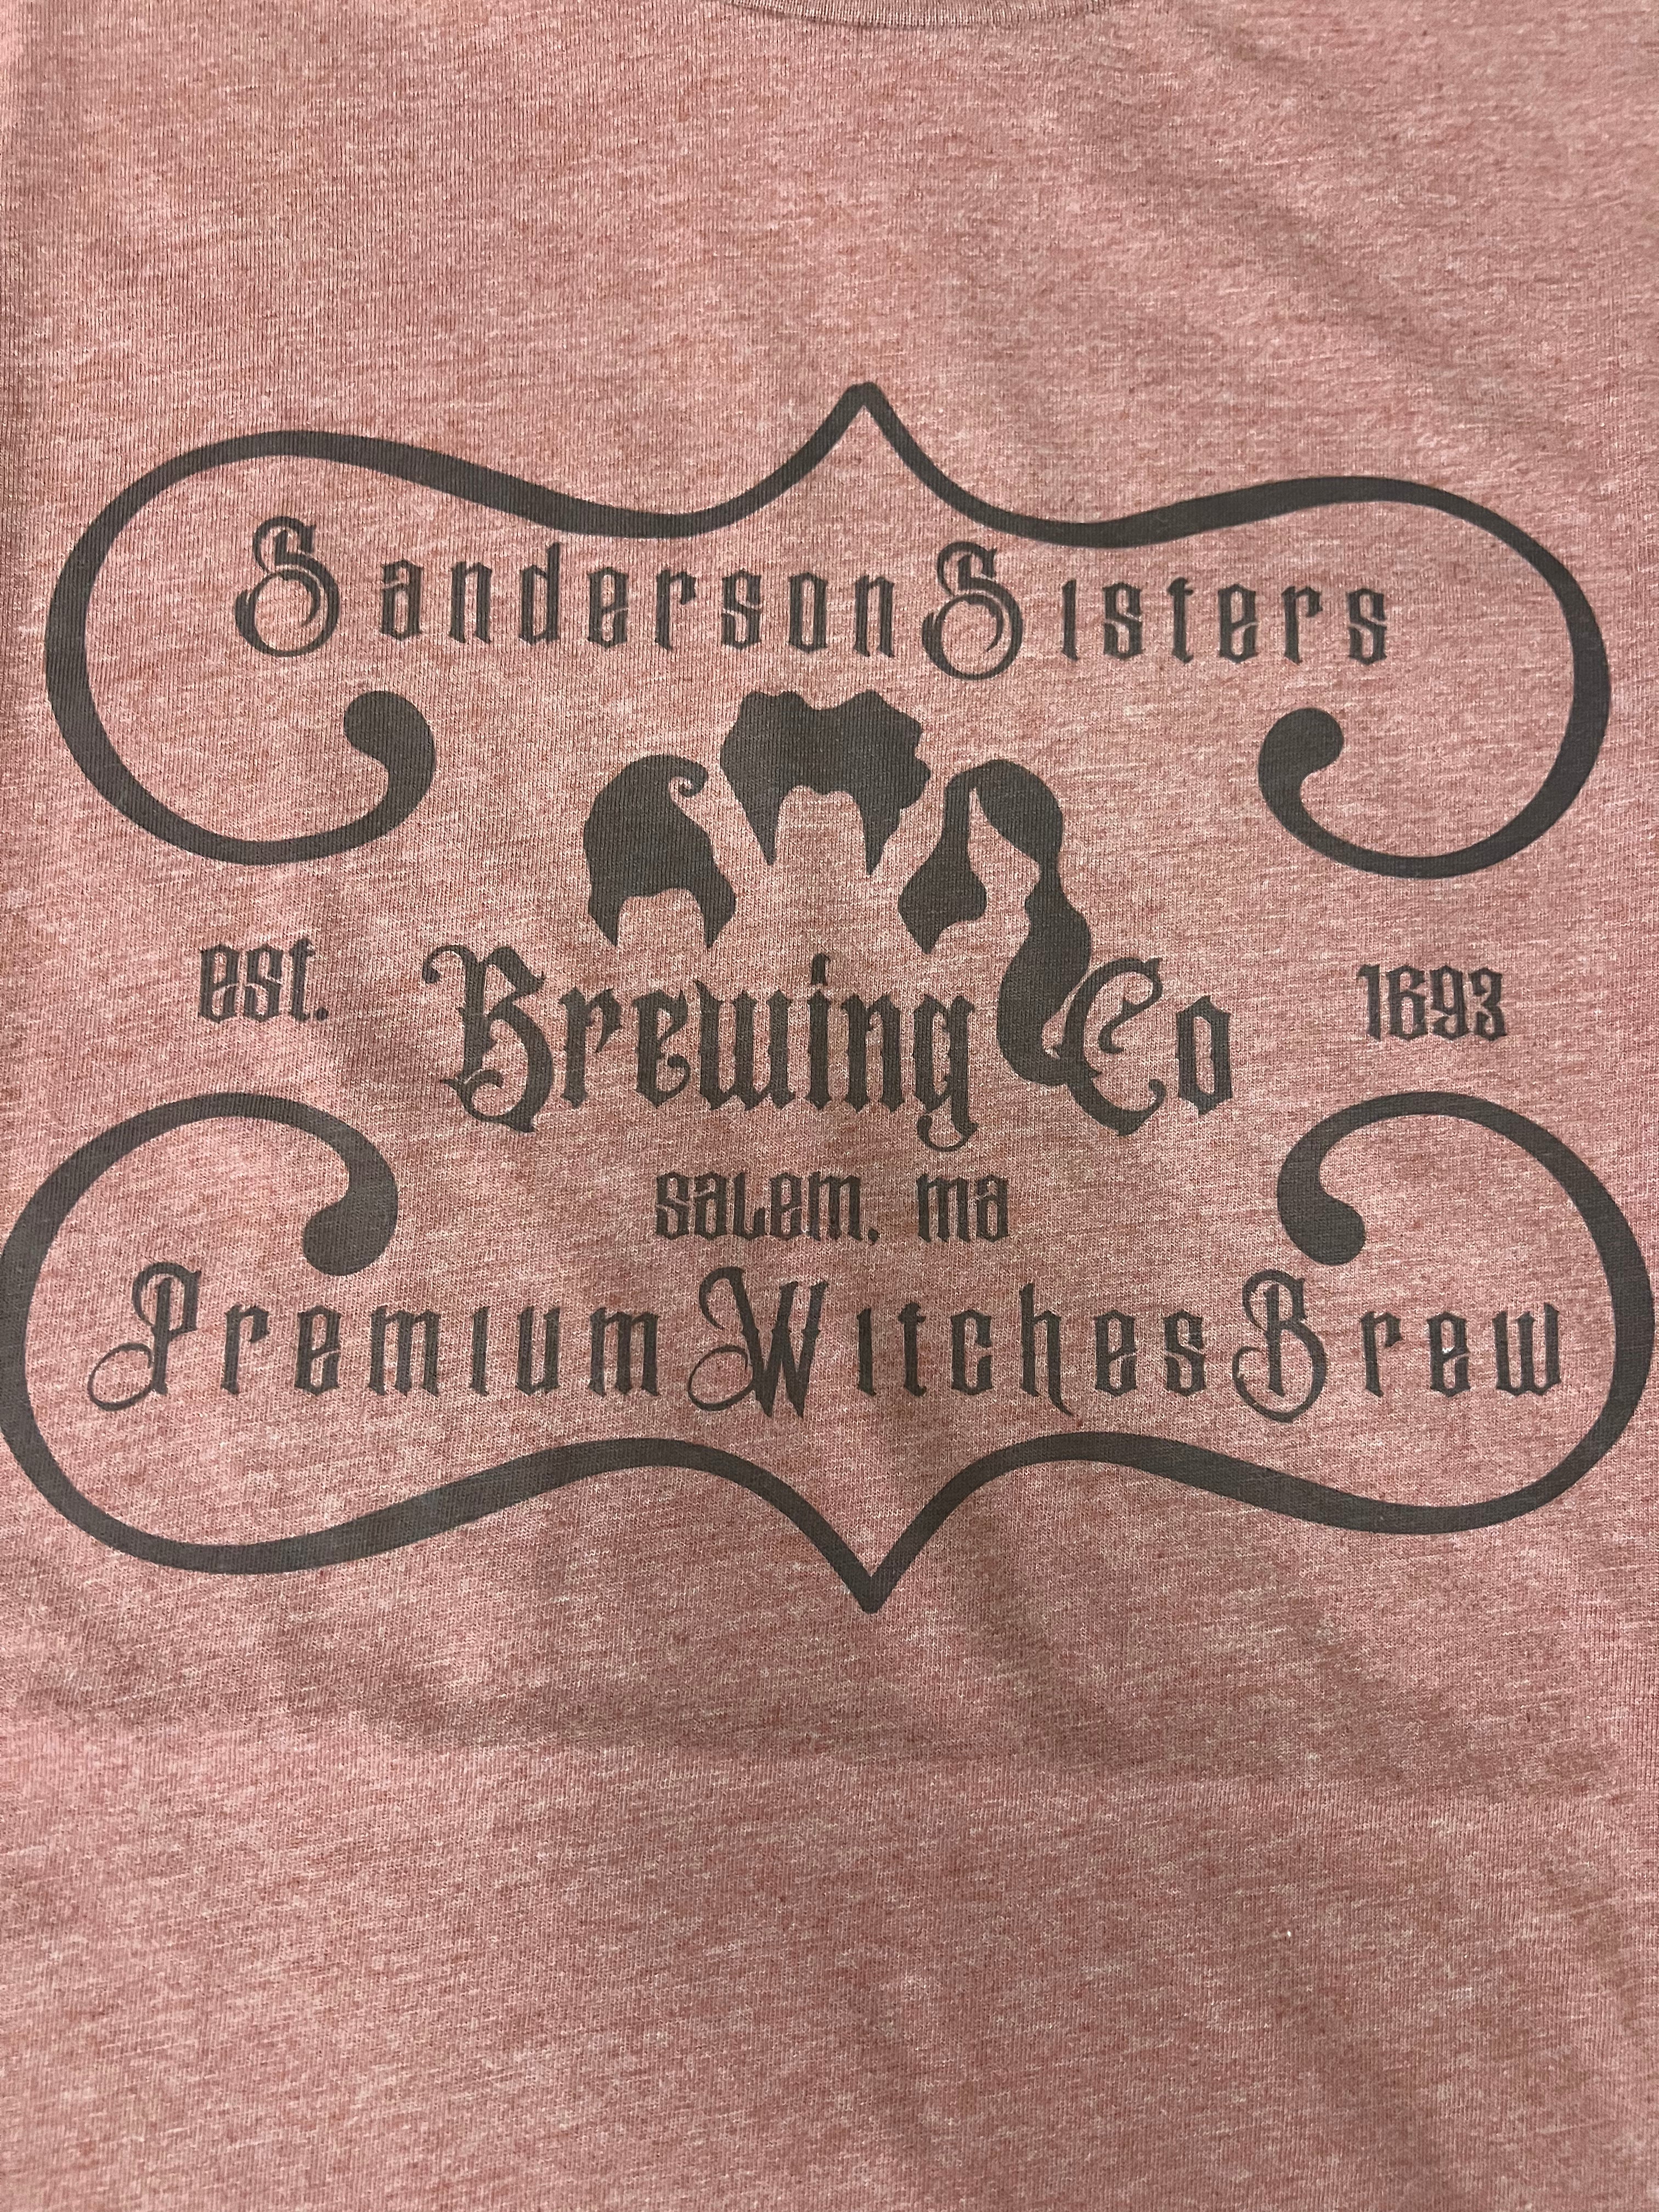 Sanderson Sisters Brew